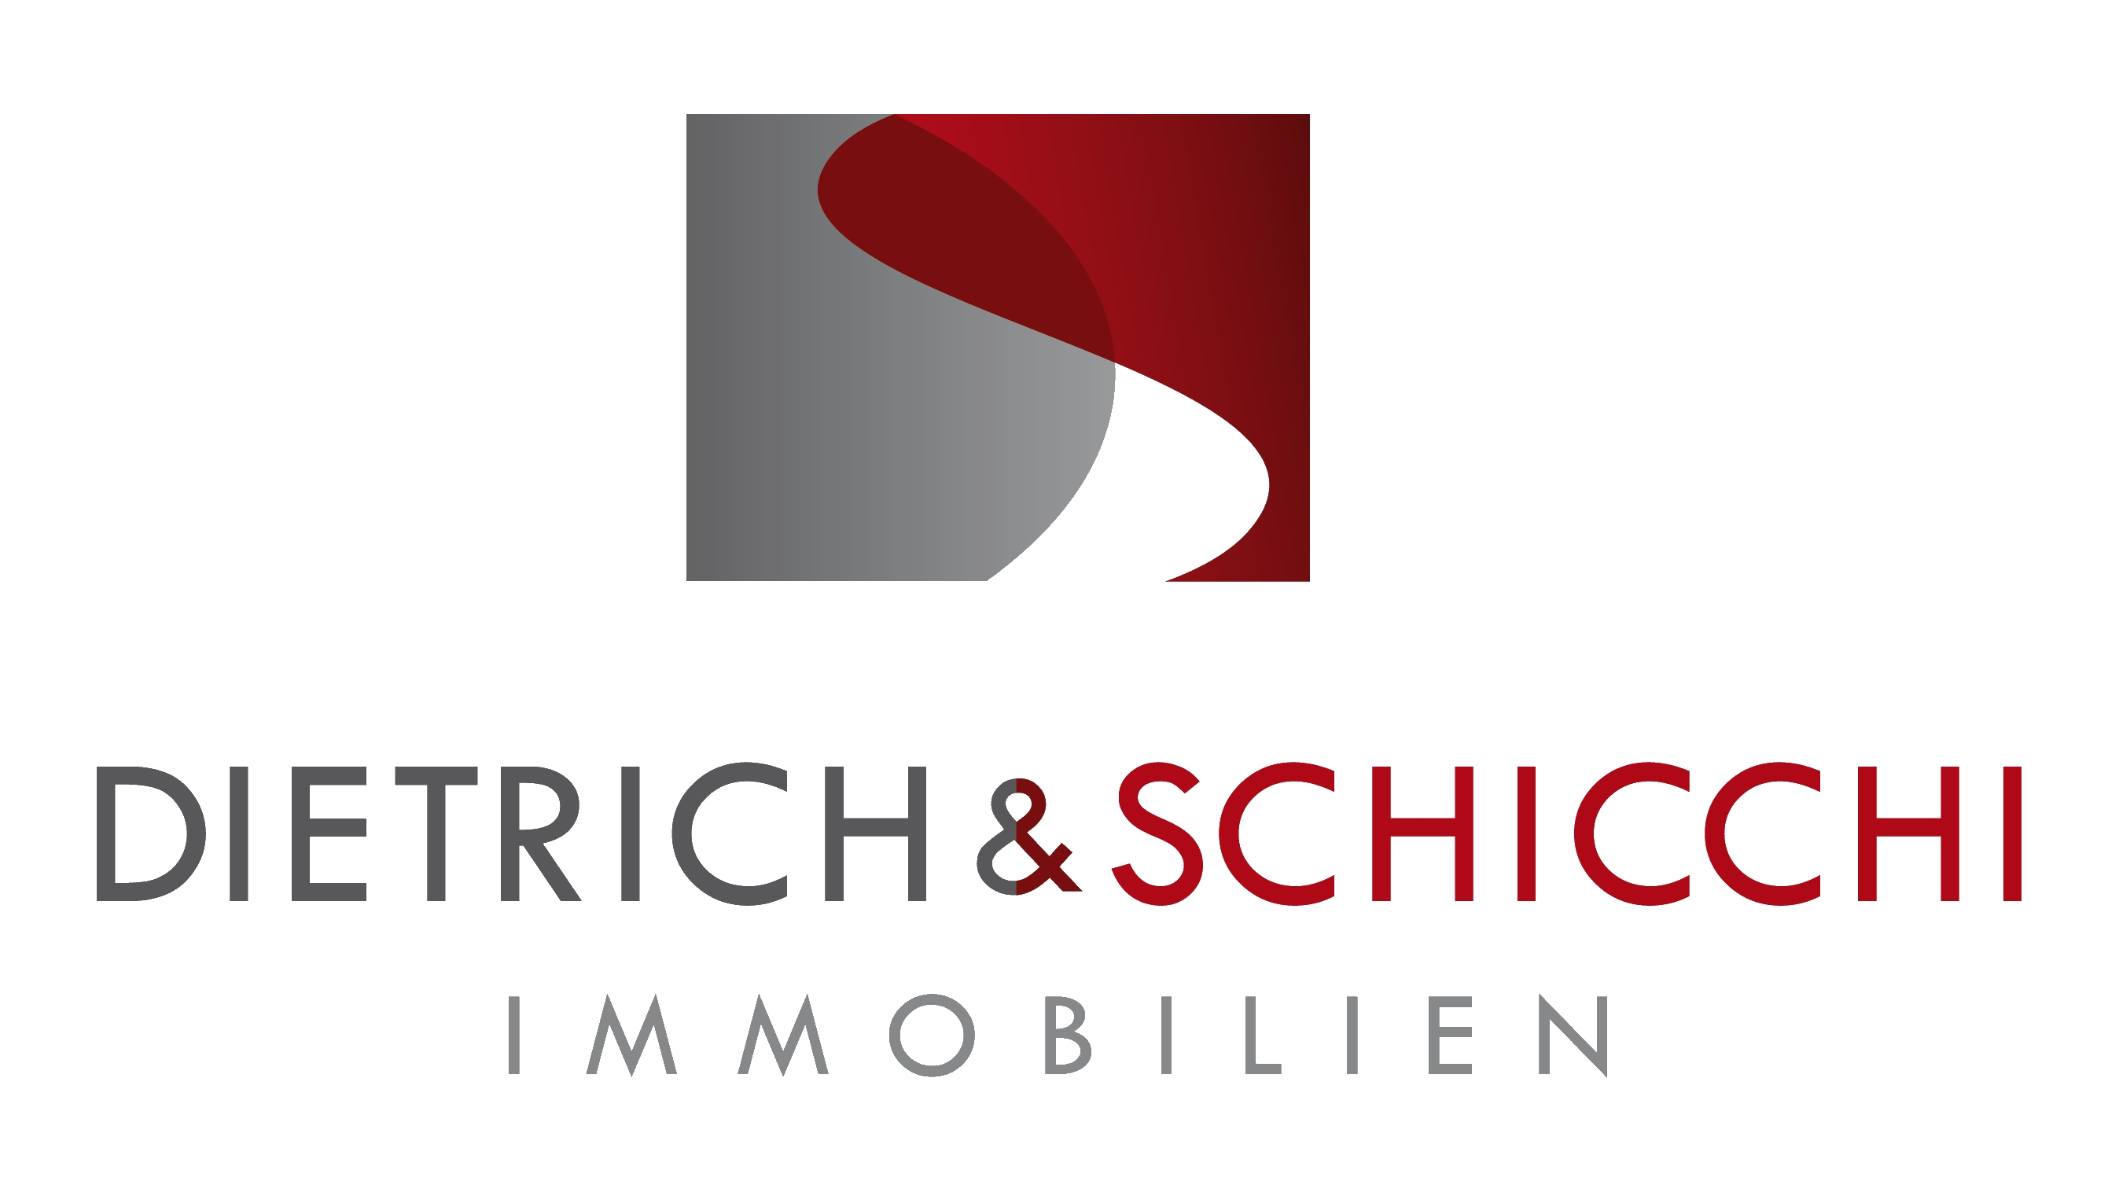 Dietrich & Schicchi Immobilien GbR, Kemnader Straße 1 in Bochum